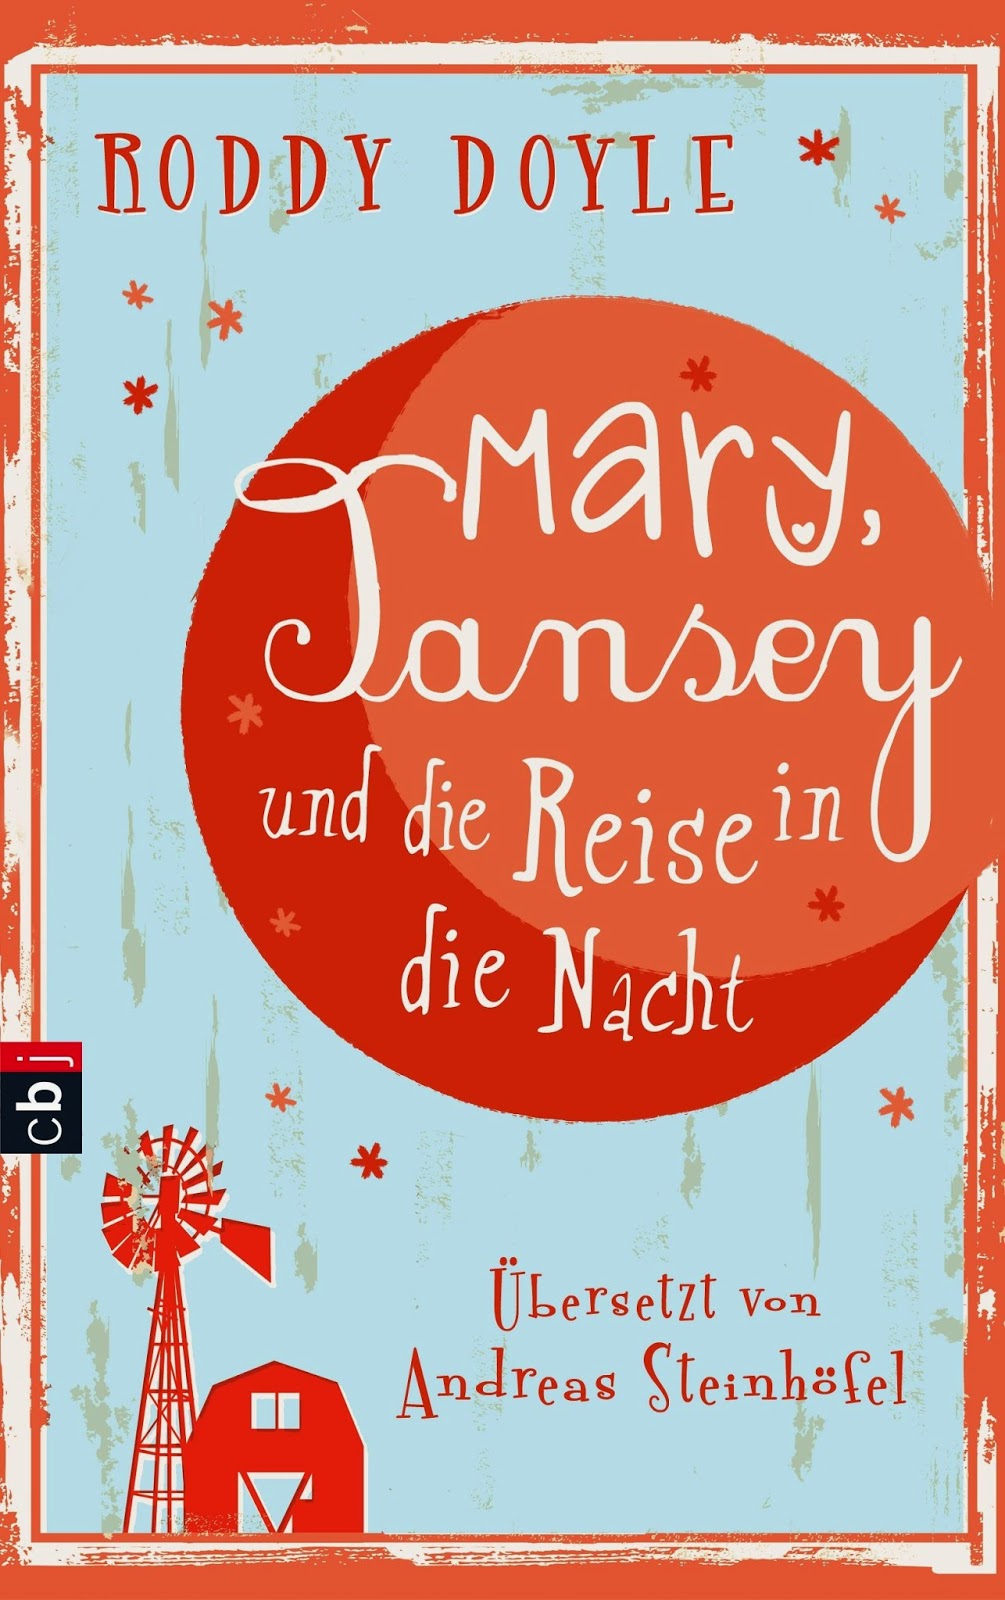 http://www.randomhouse.de/Taschenbuch/Mary-Tansey-und-die-Reise-in-die-Nacht/Roddy-Doyle/e438159.rhd